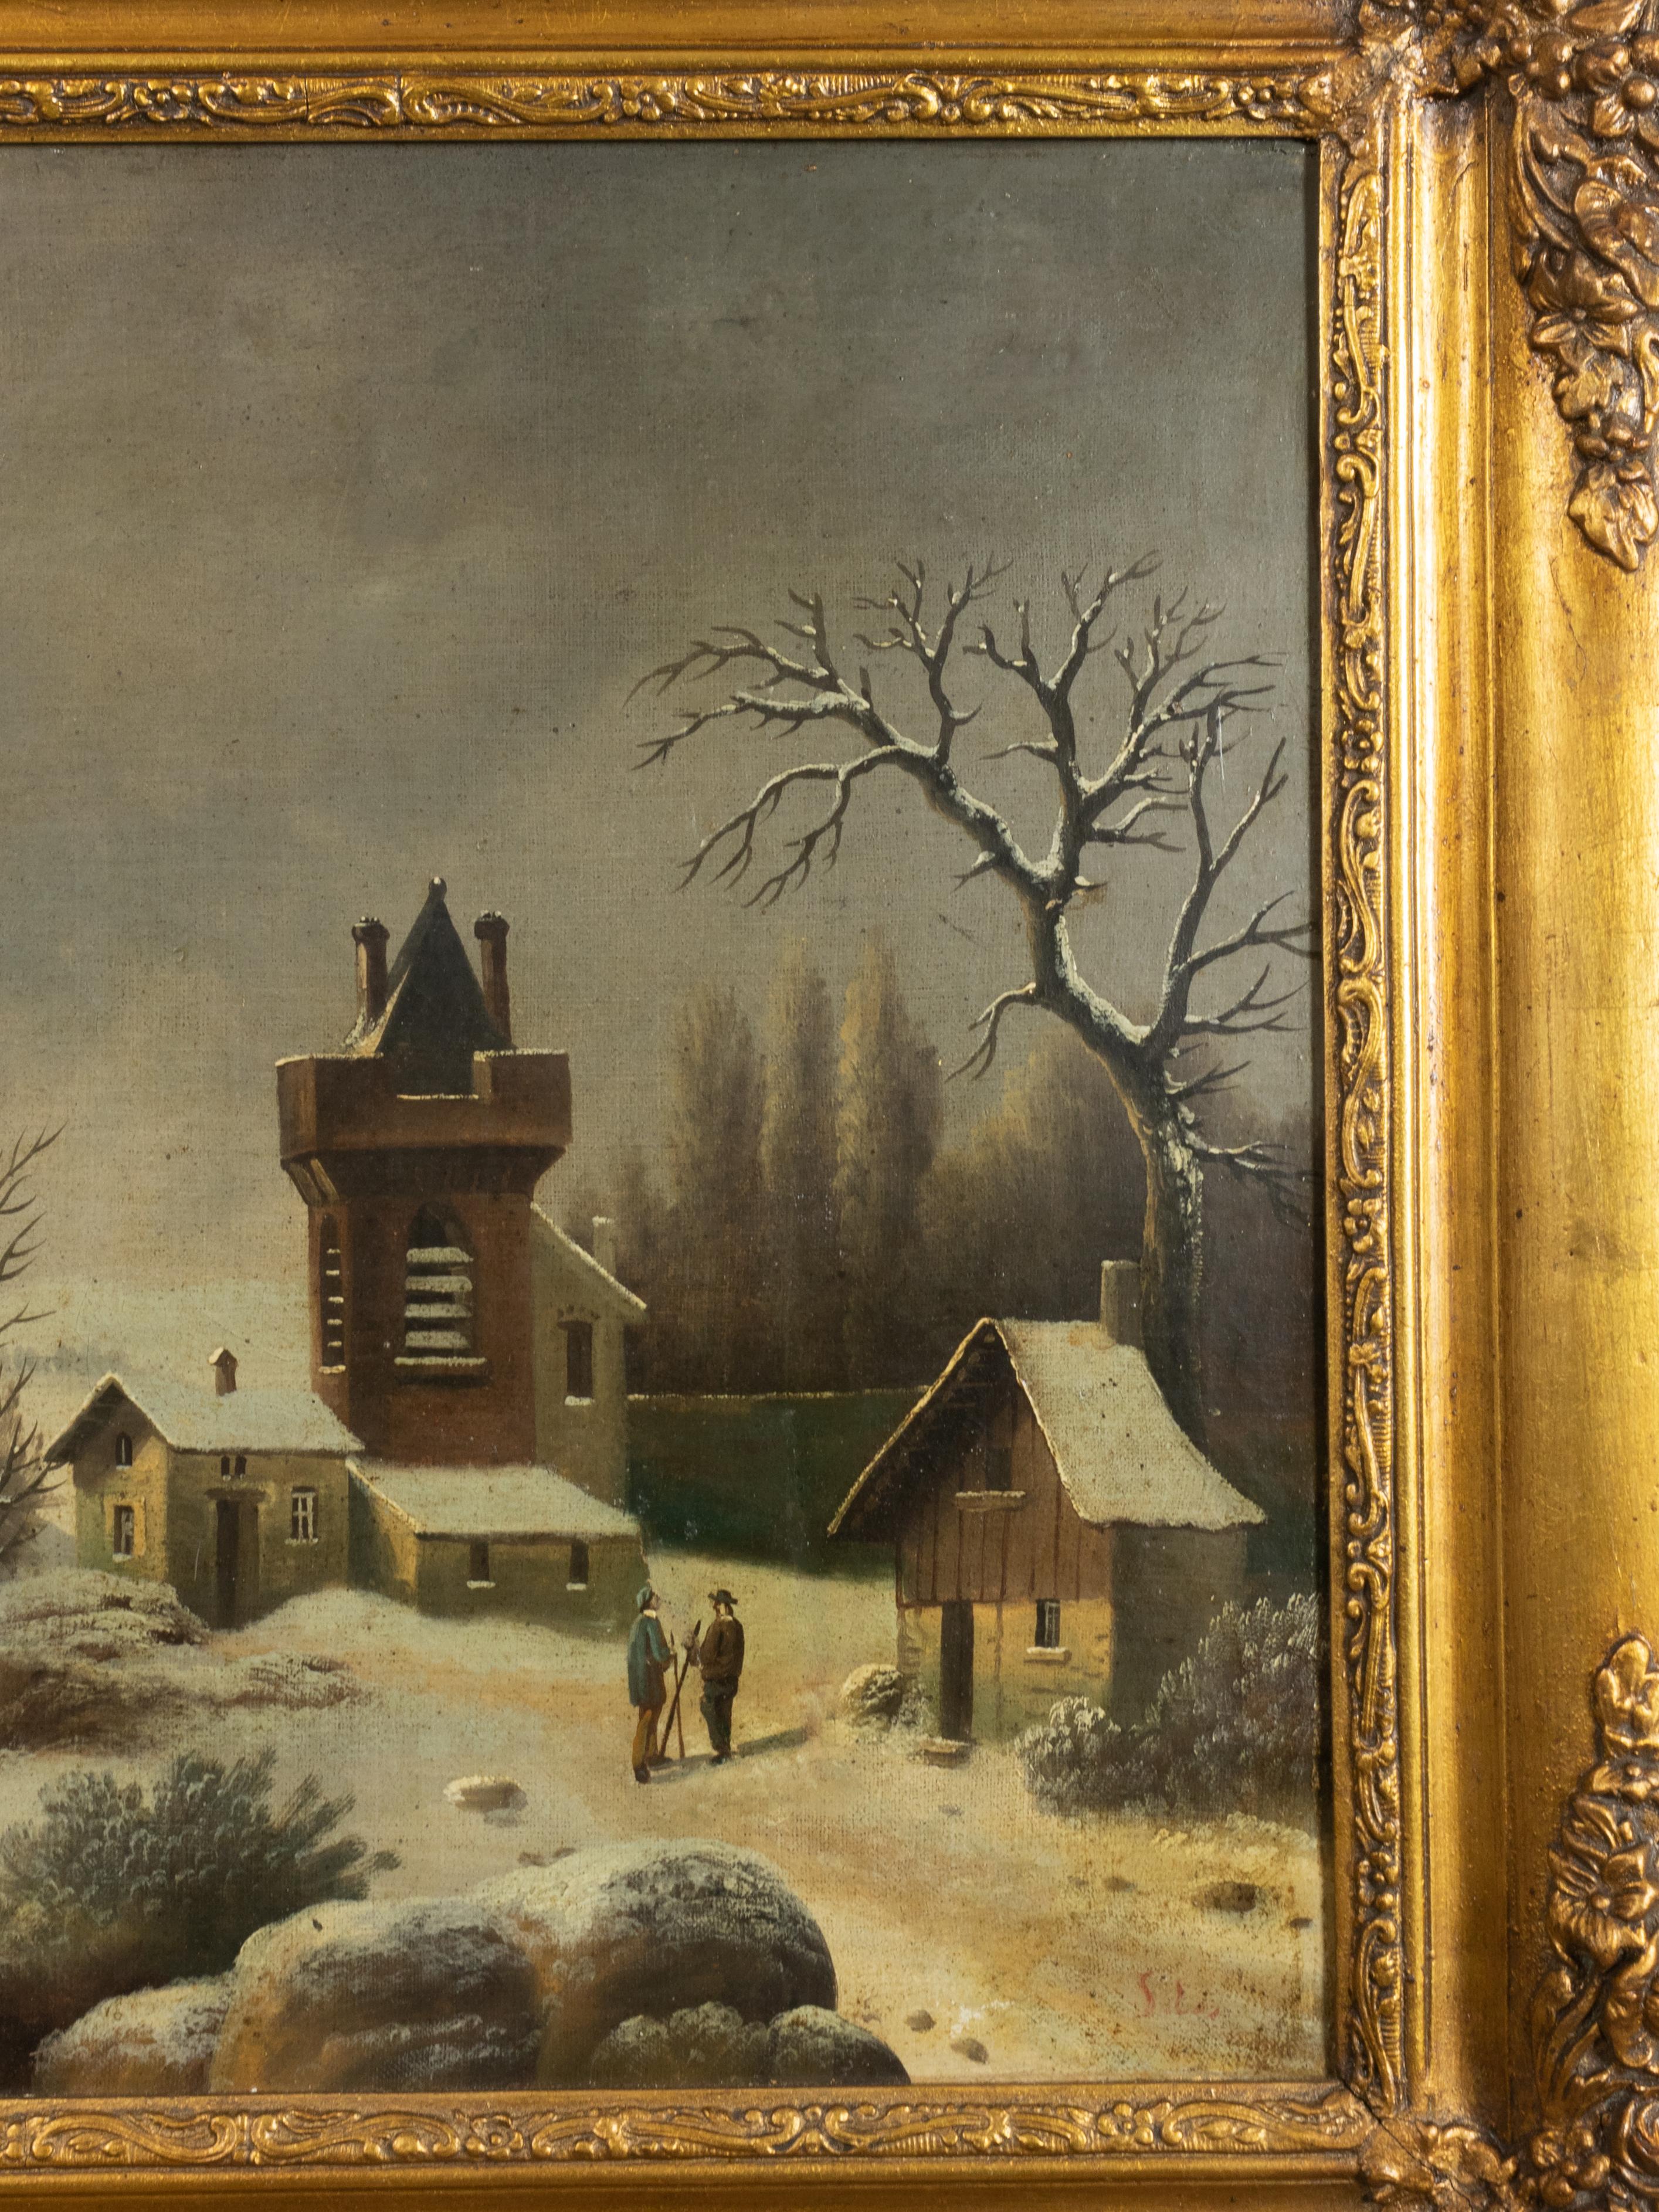 Eine bemerkenswert düstere Anspielung auf die flämische Wintermalerei im Barockstil, die eine Gruppe von Menschen zeigt, die an einem Flussufer entlang spazieren, umgeben von einer kargen und eisigen Landschaft. Die Stimmung der Komposition ist